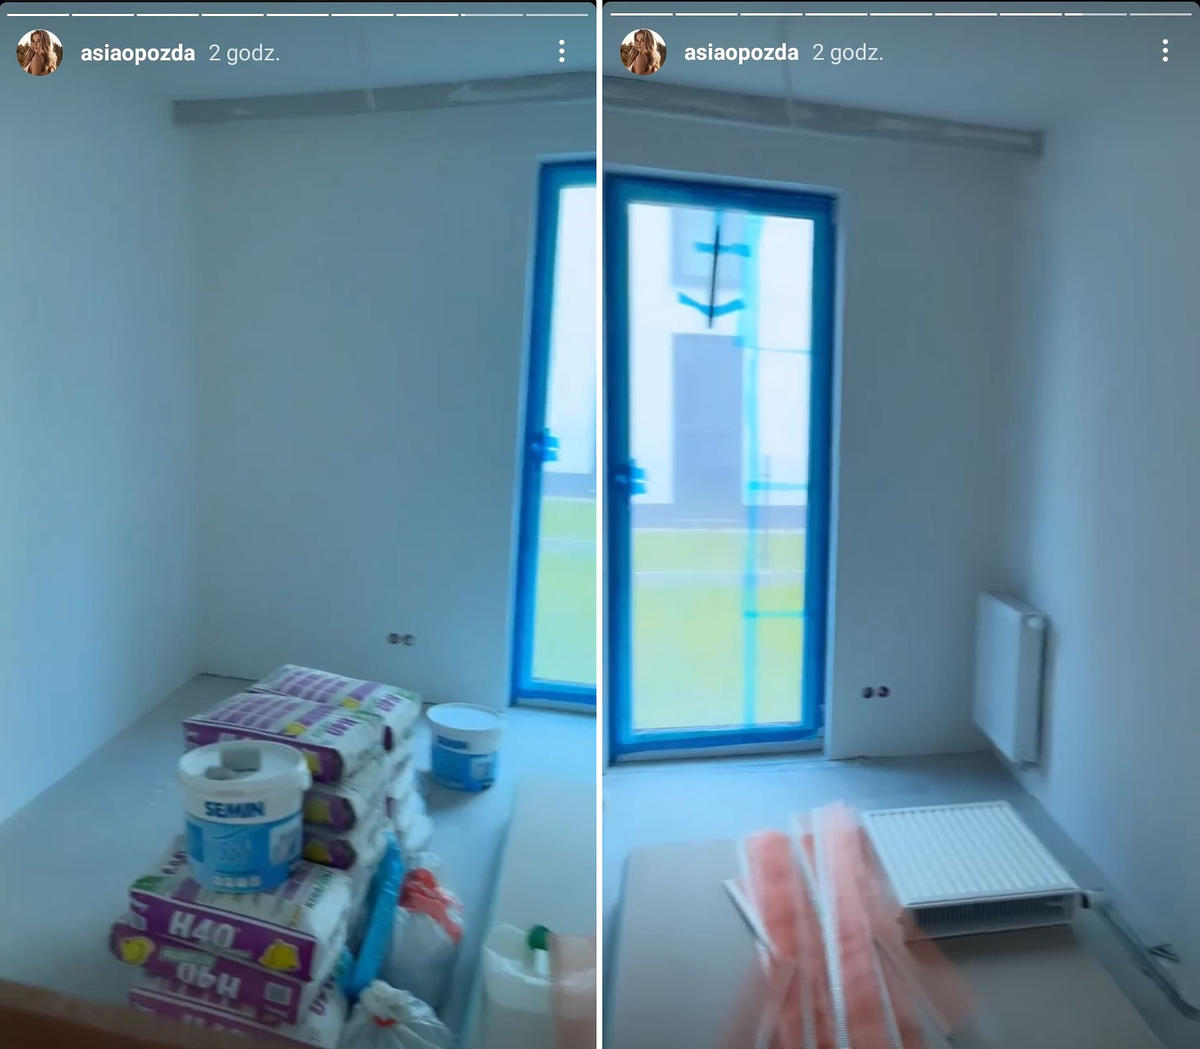 Joanna Opozda urządza nowe mieszkanie